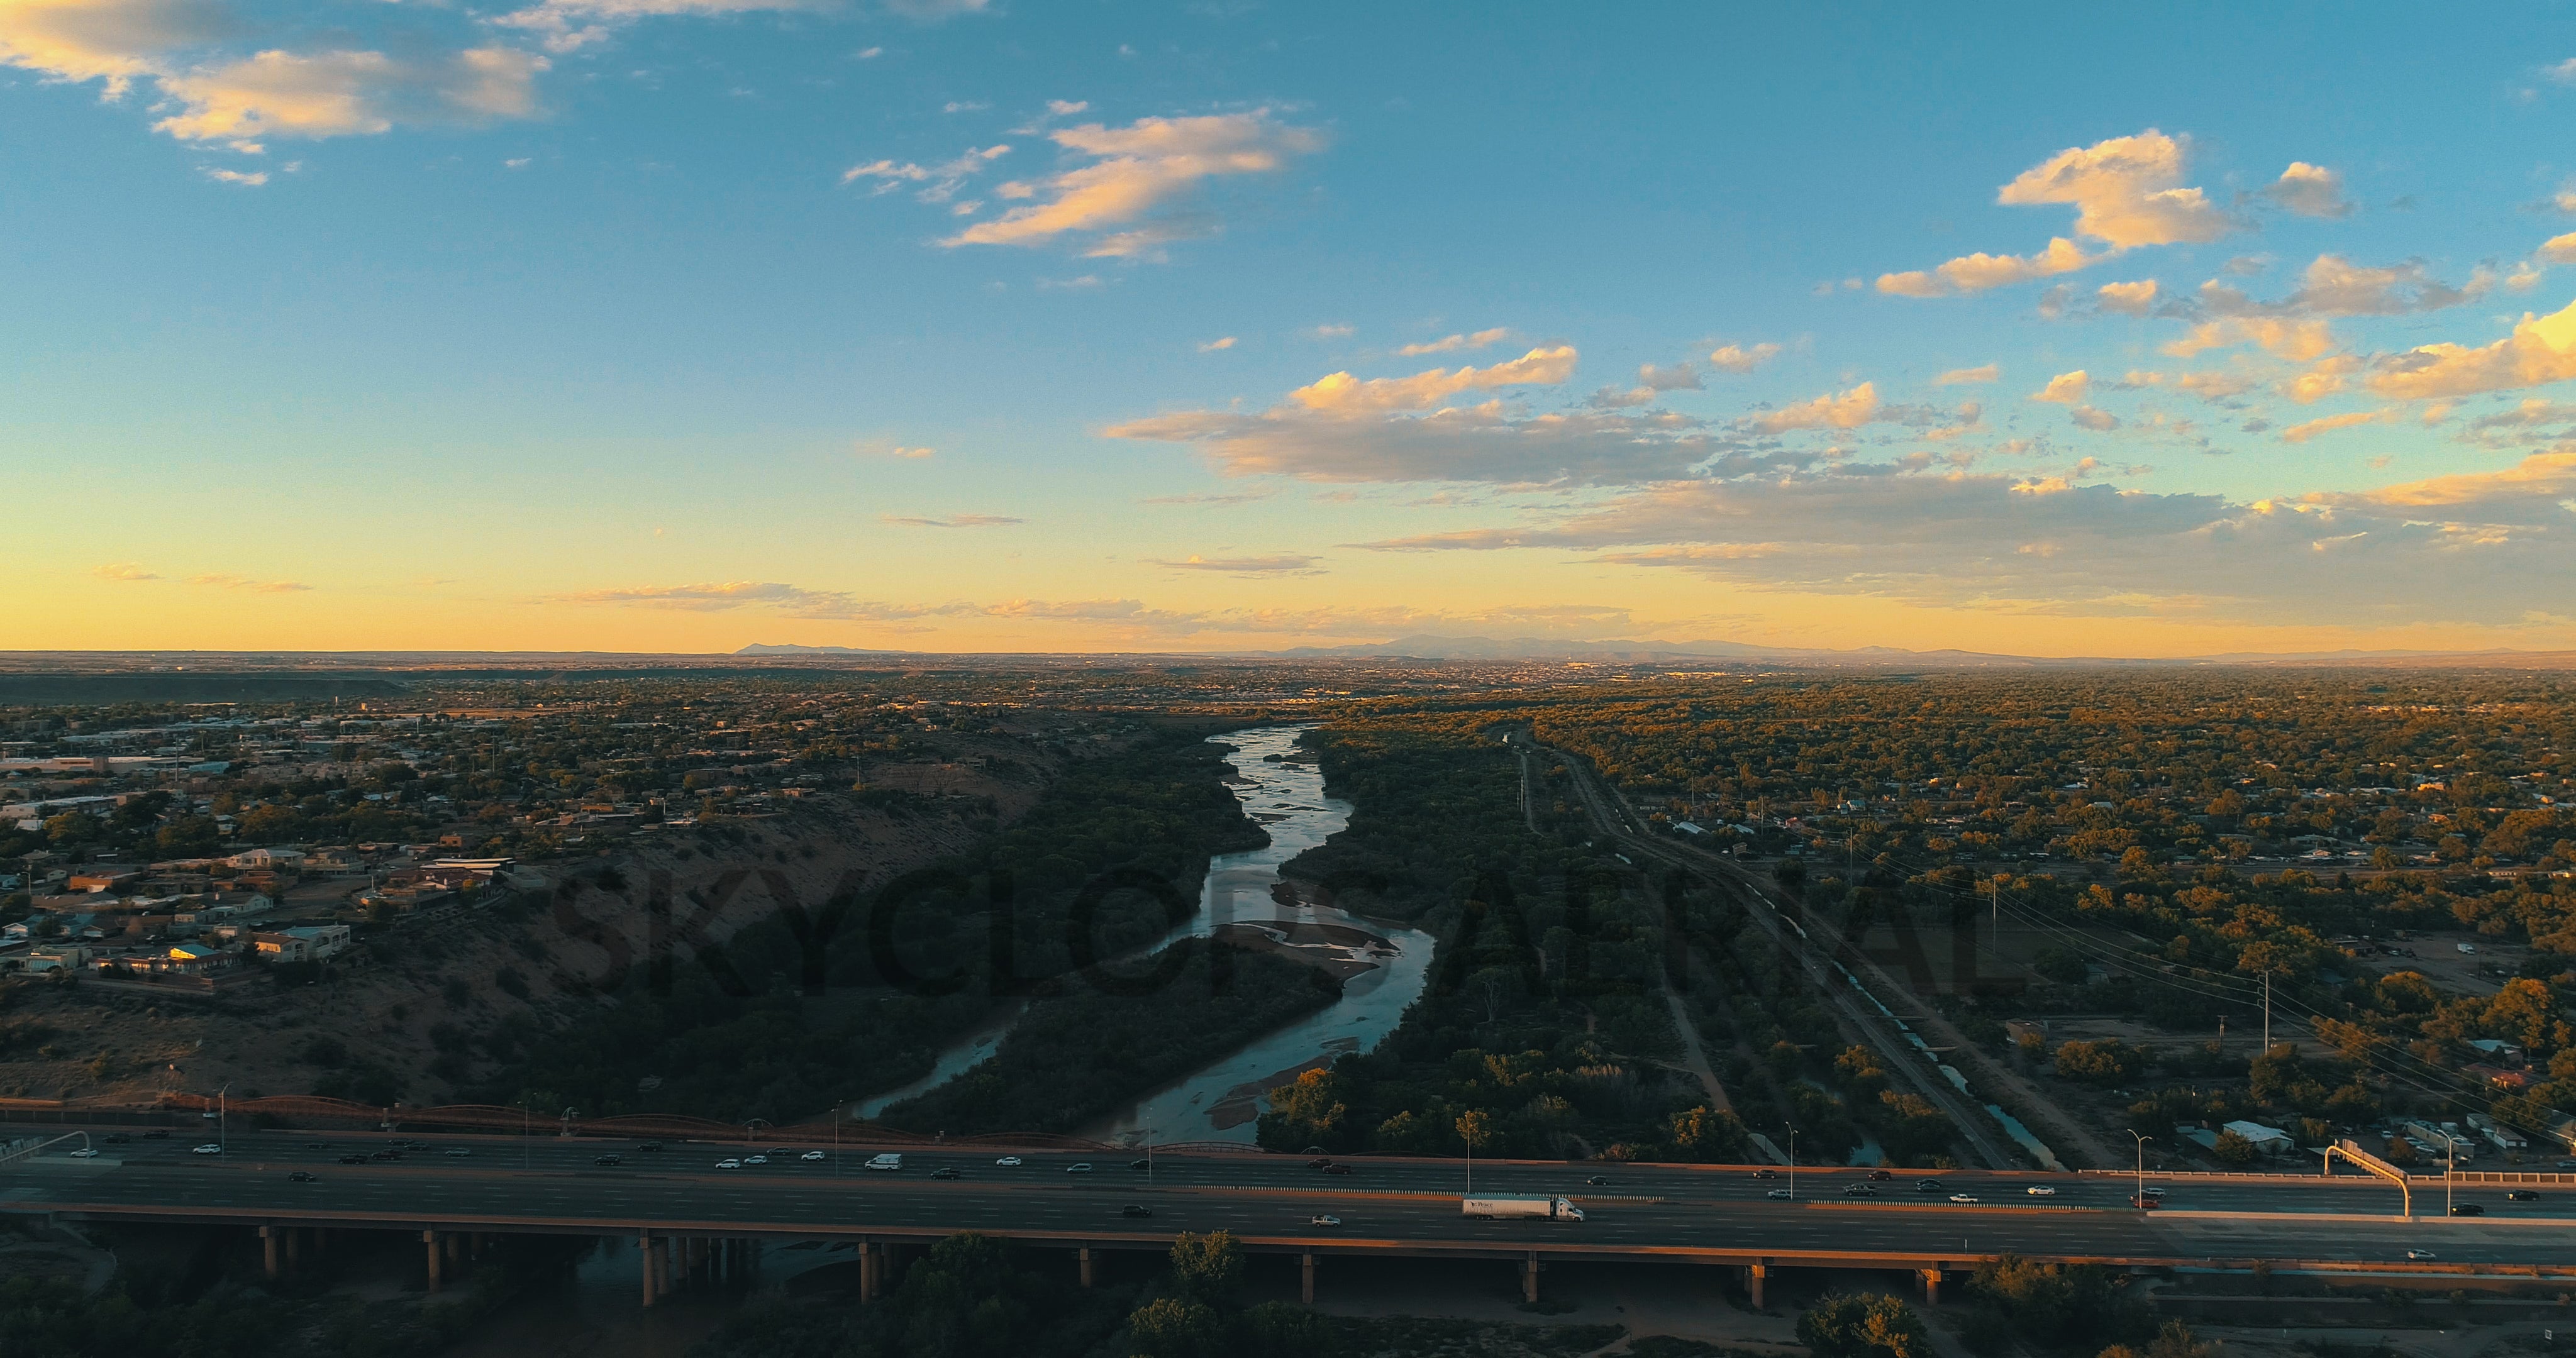 Video: I-40 over the Rio Grande River